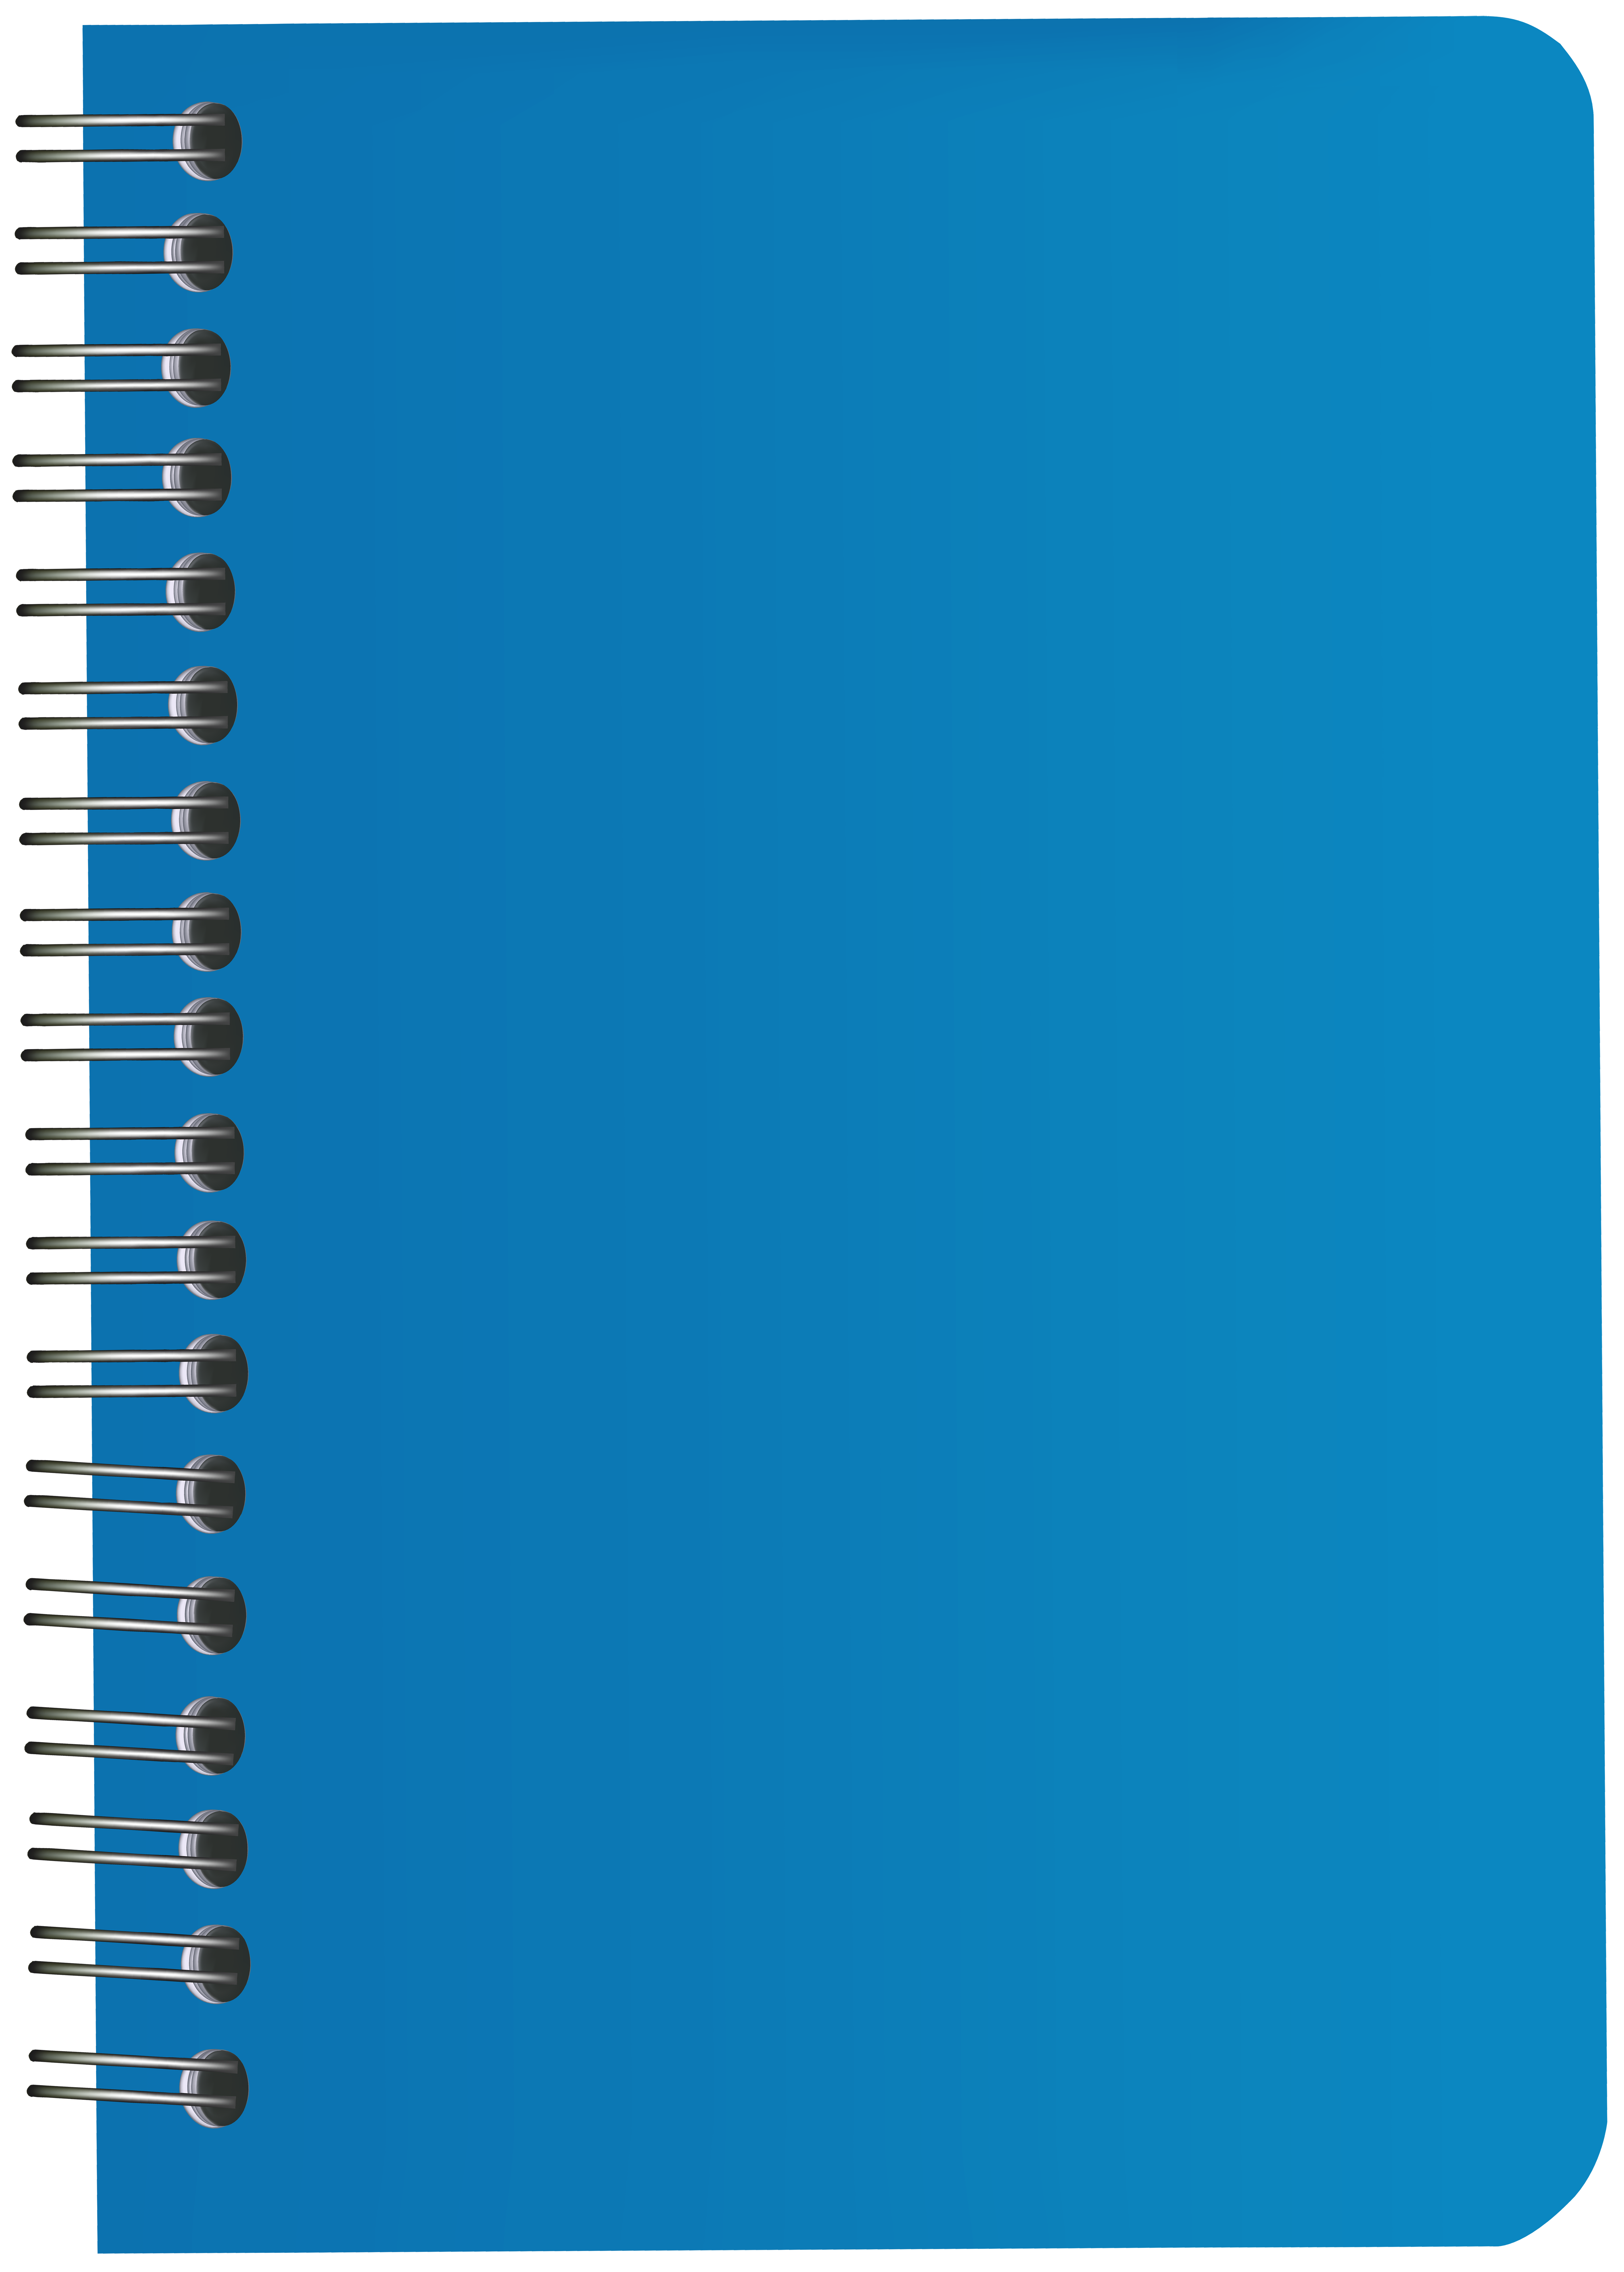 notebook clipart blue